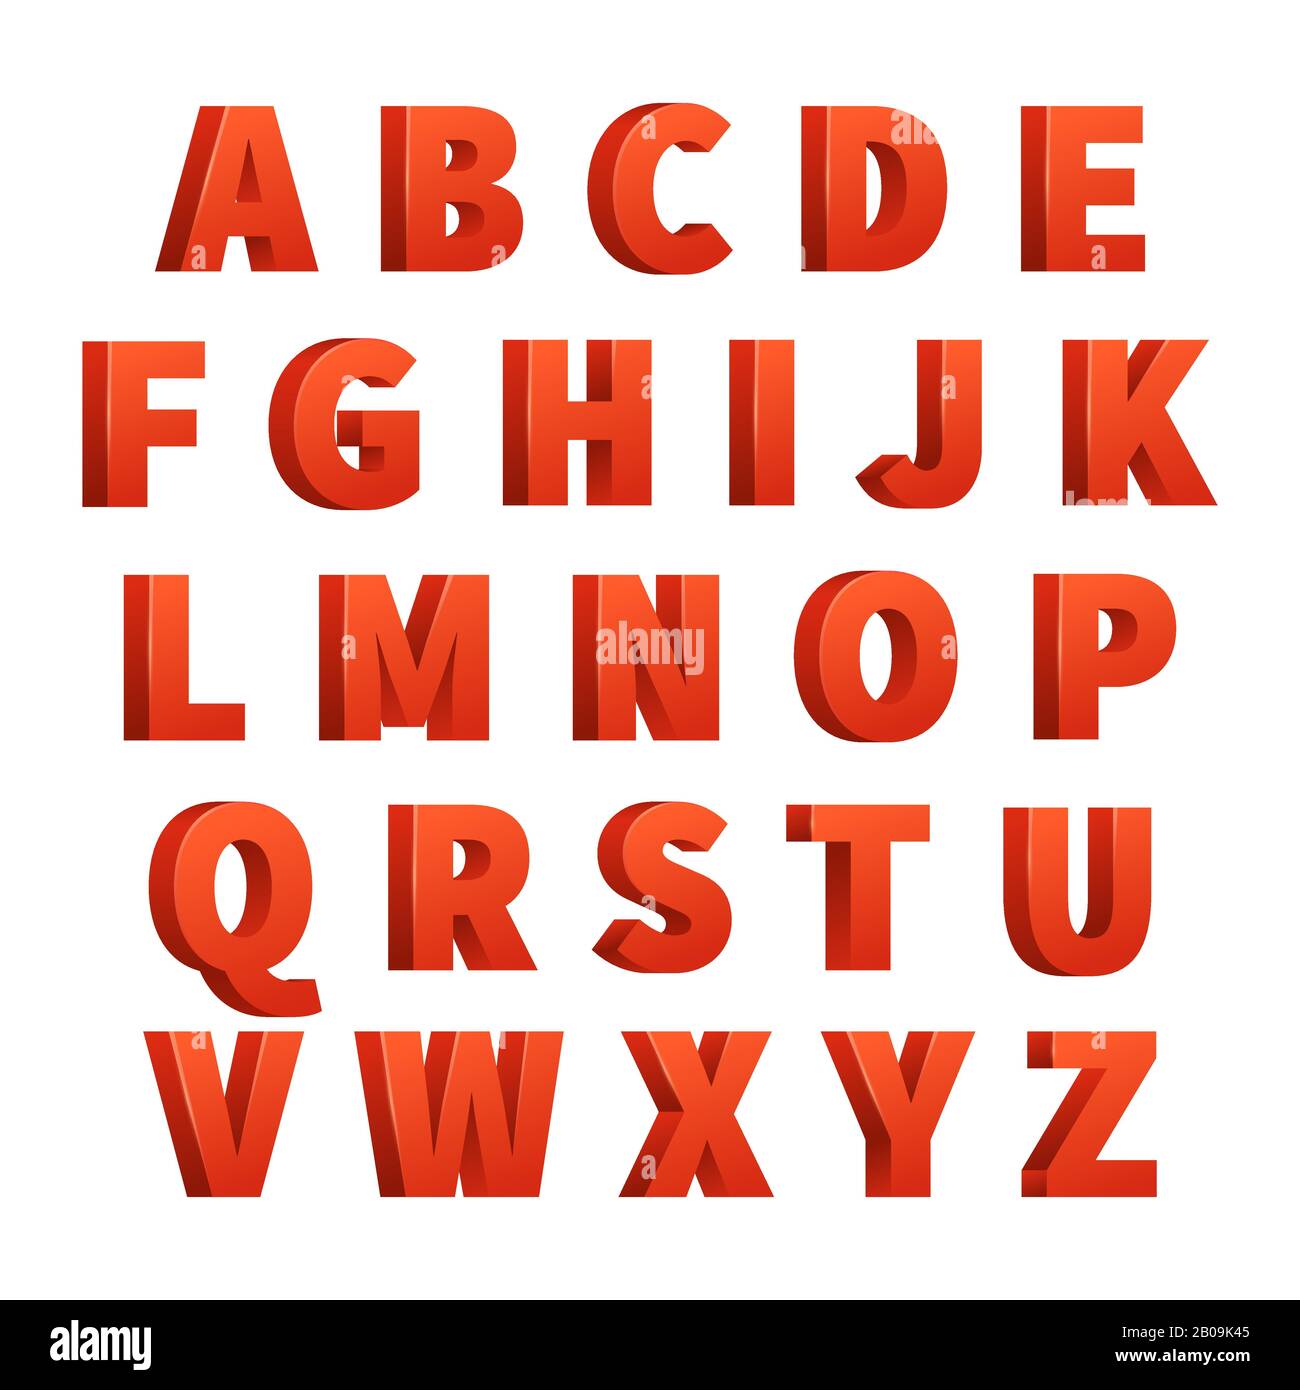 Lettere 3d rosse alfabeto vettoriale, lettere. Disegno di abc rosso per la tipografia, abc lettere vintage per l'illustrazione del manifesto Illustrazione Vettoriale